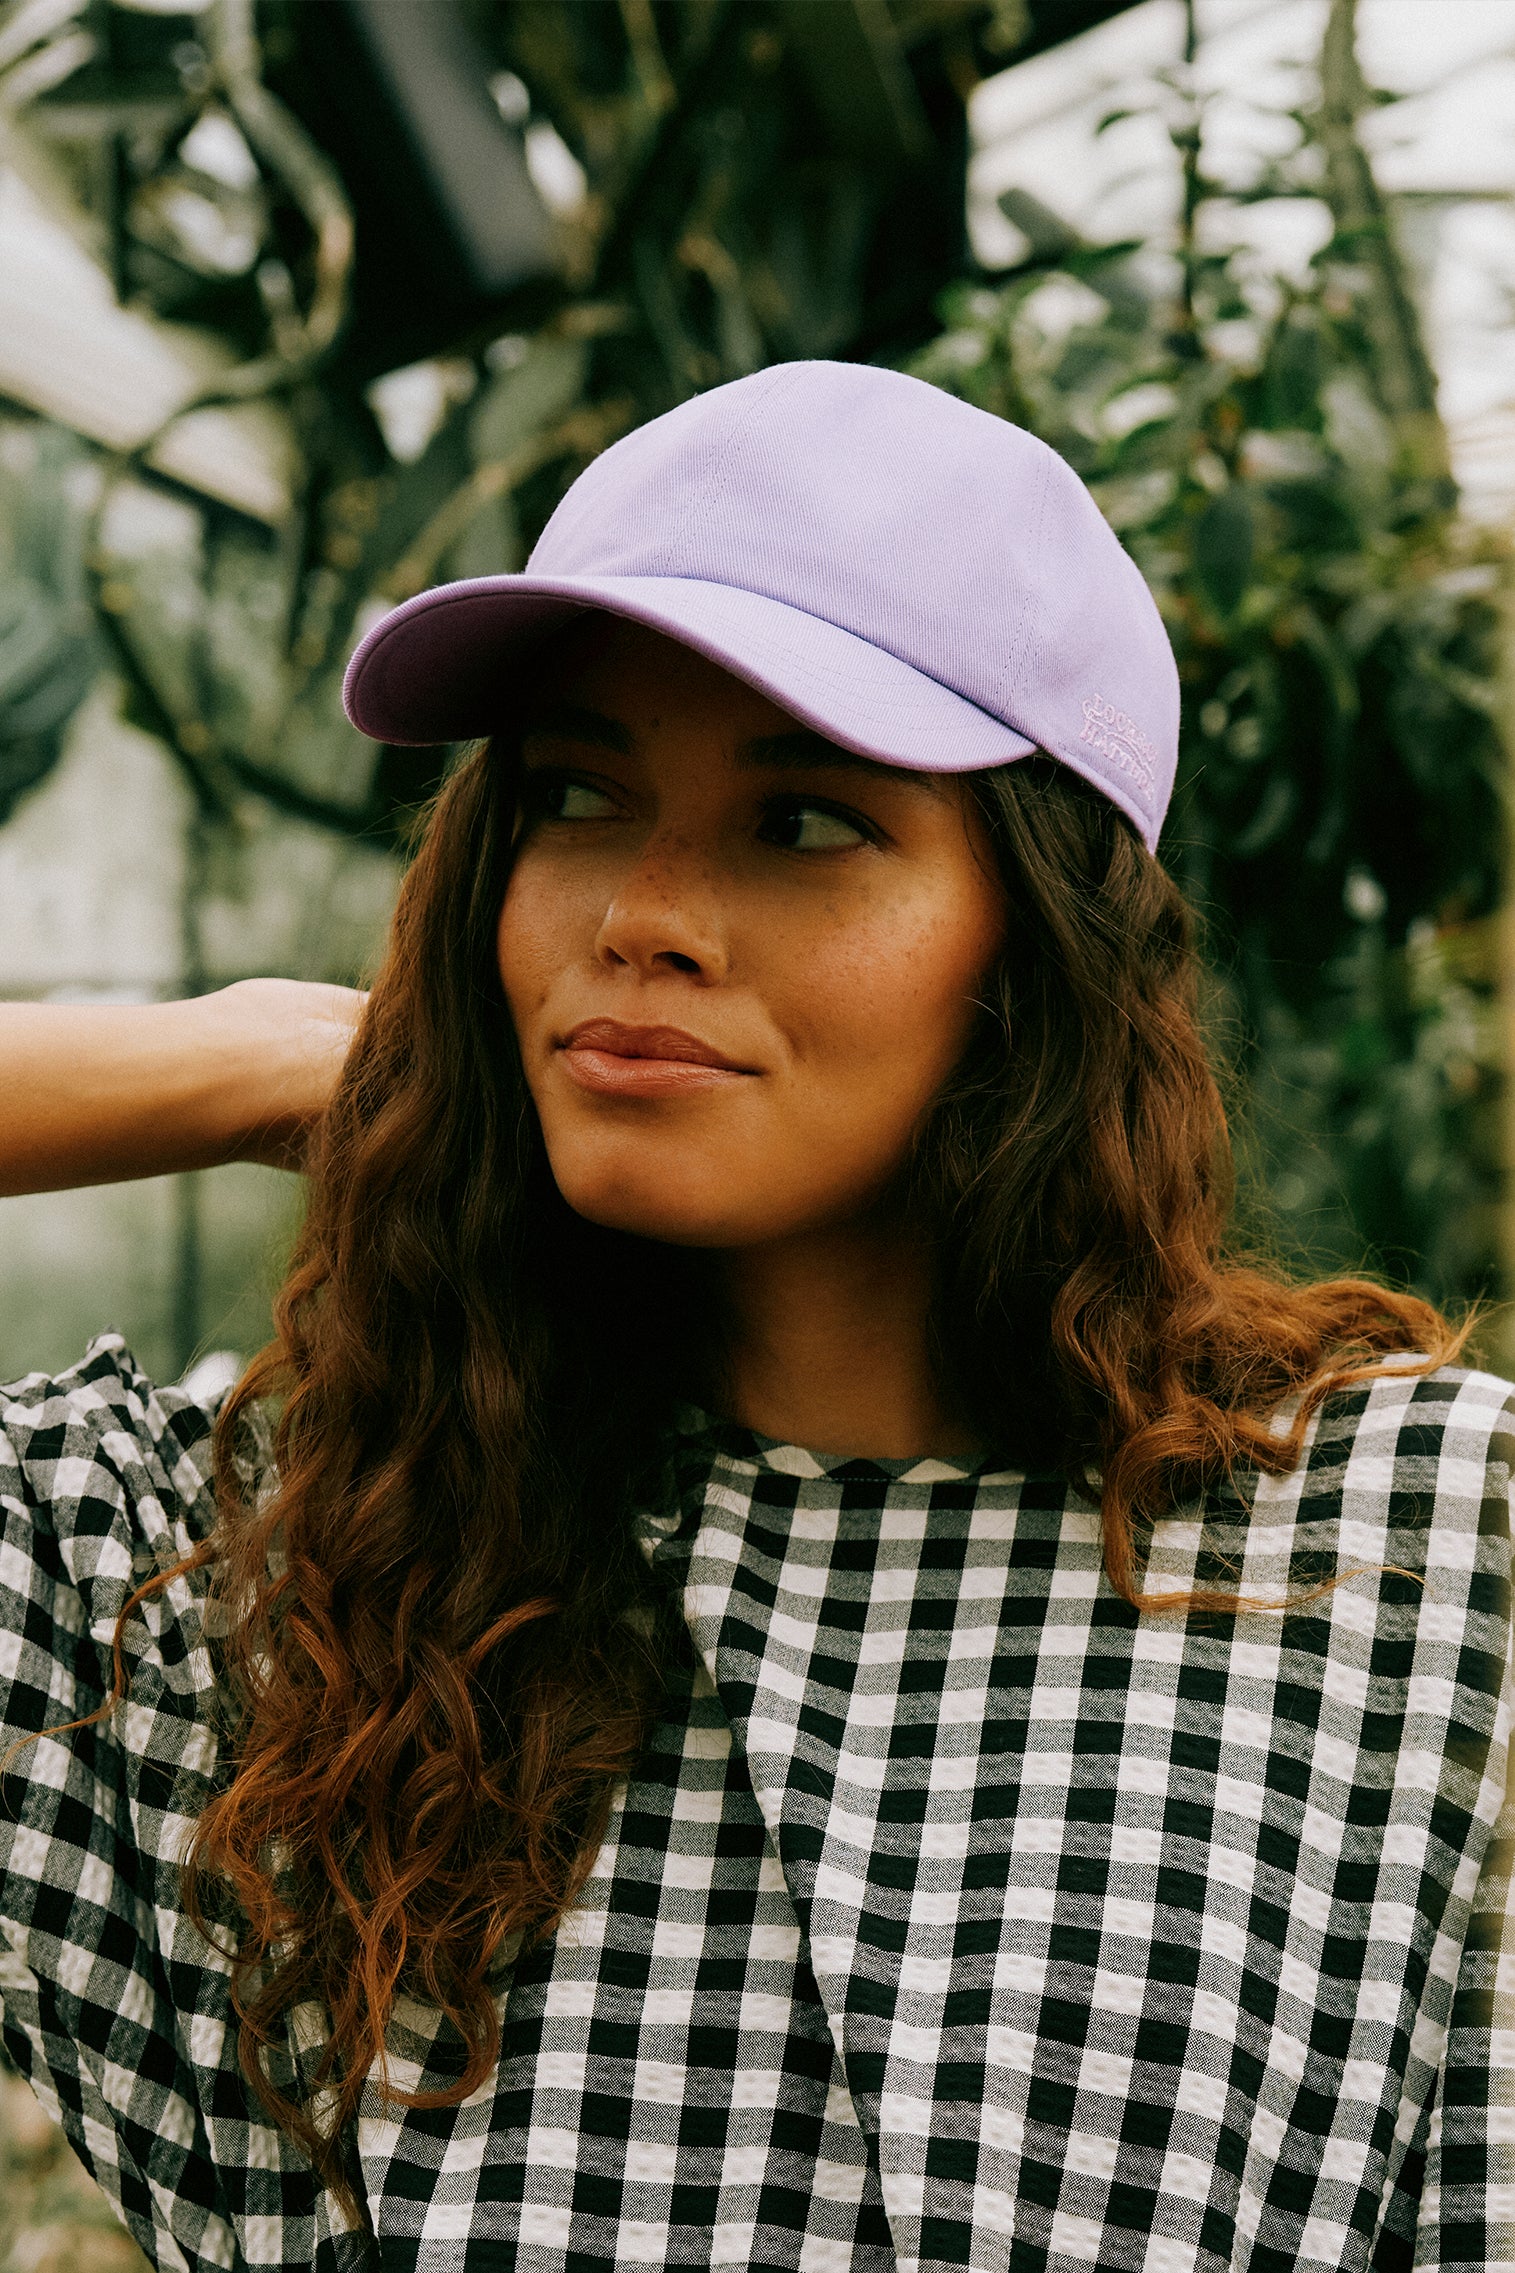 Adjustable Purple Baseball Cap - Women’s Hats - Lock & Co. Hatters London UK